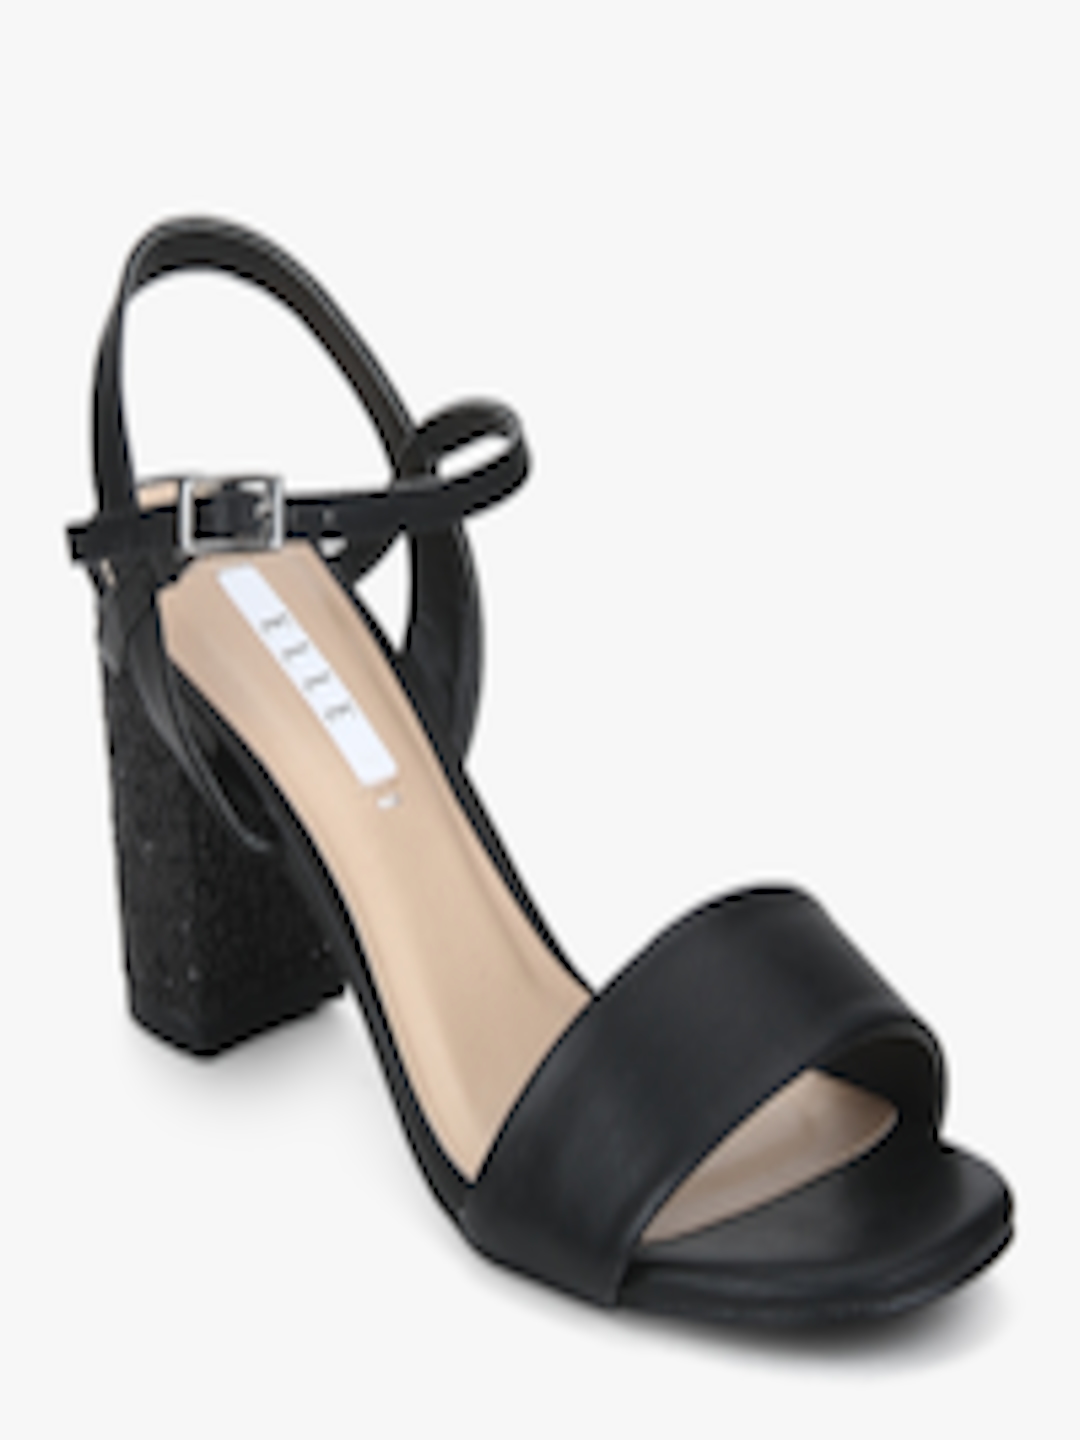 Buy Black Block Heels - Heels for Women 7952455 | Myntra